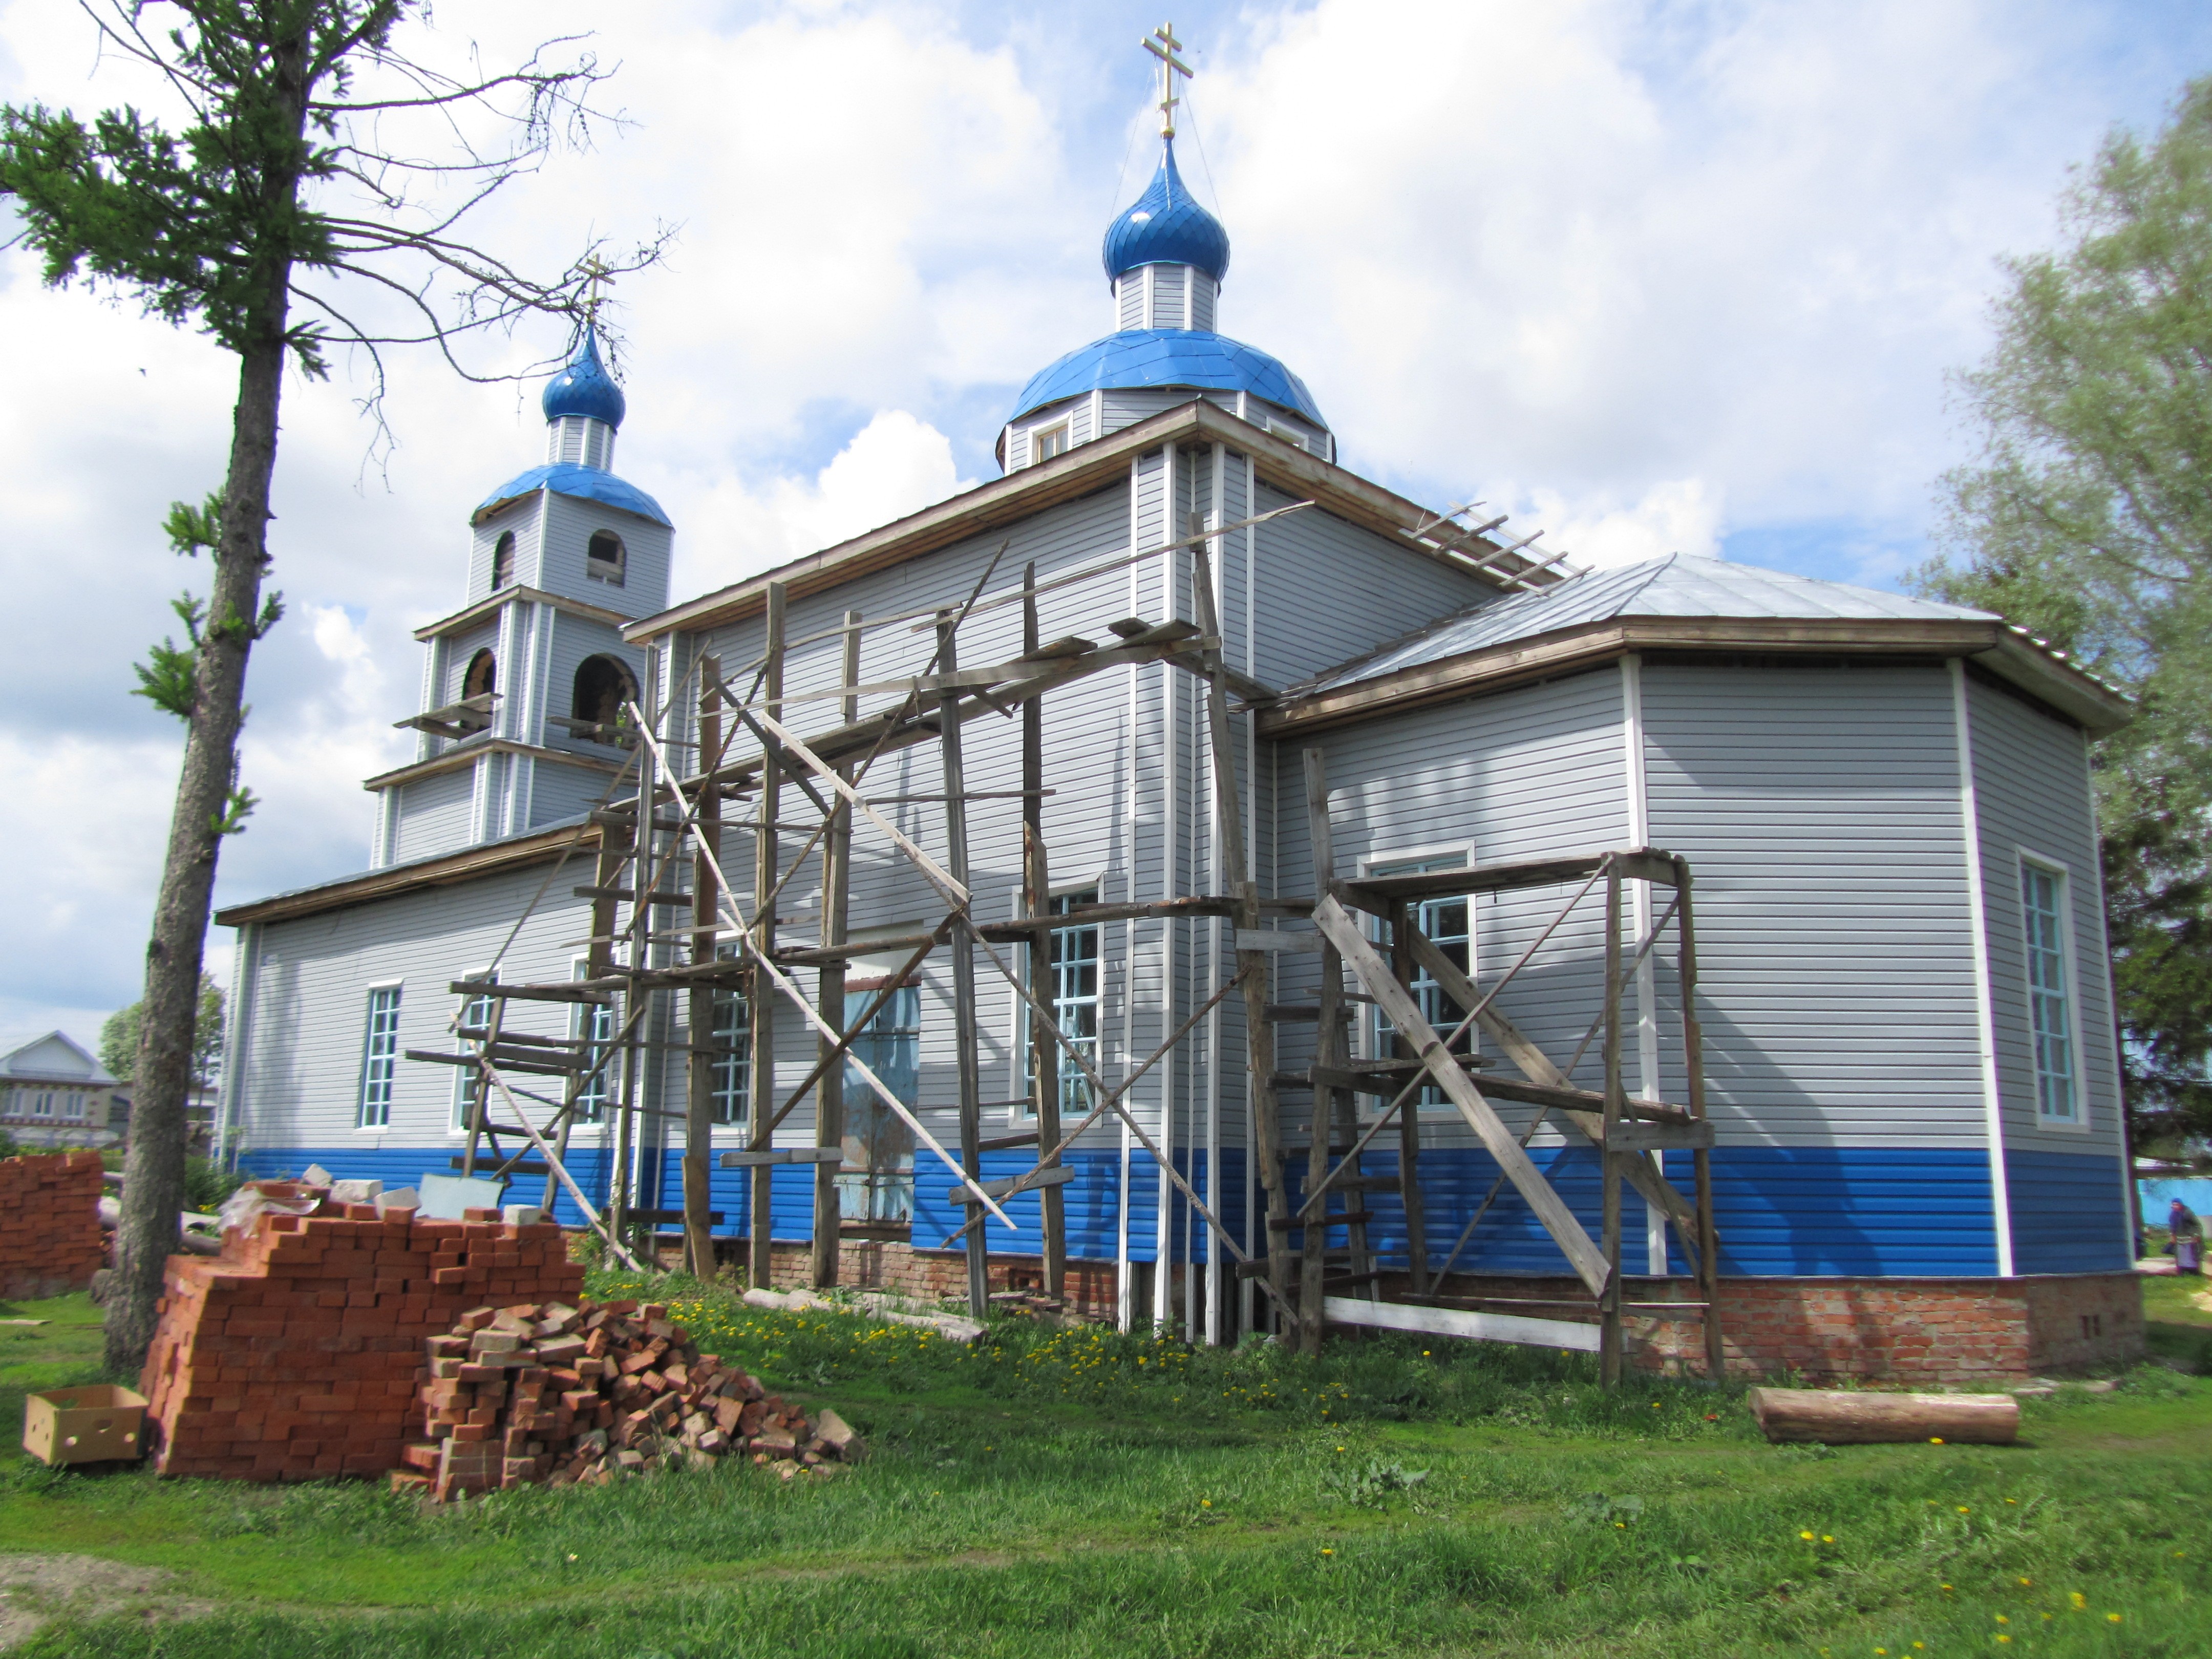 08:46 Ядринский район: первый молебен прошел в восстанавливающемся храме Святителя Николая